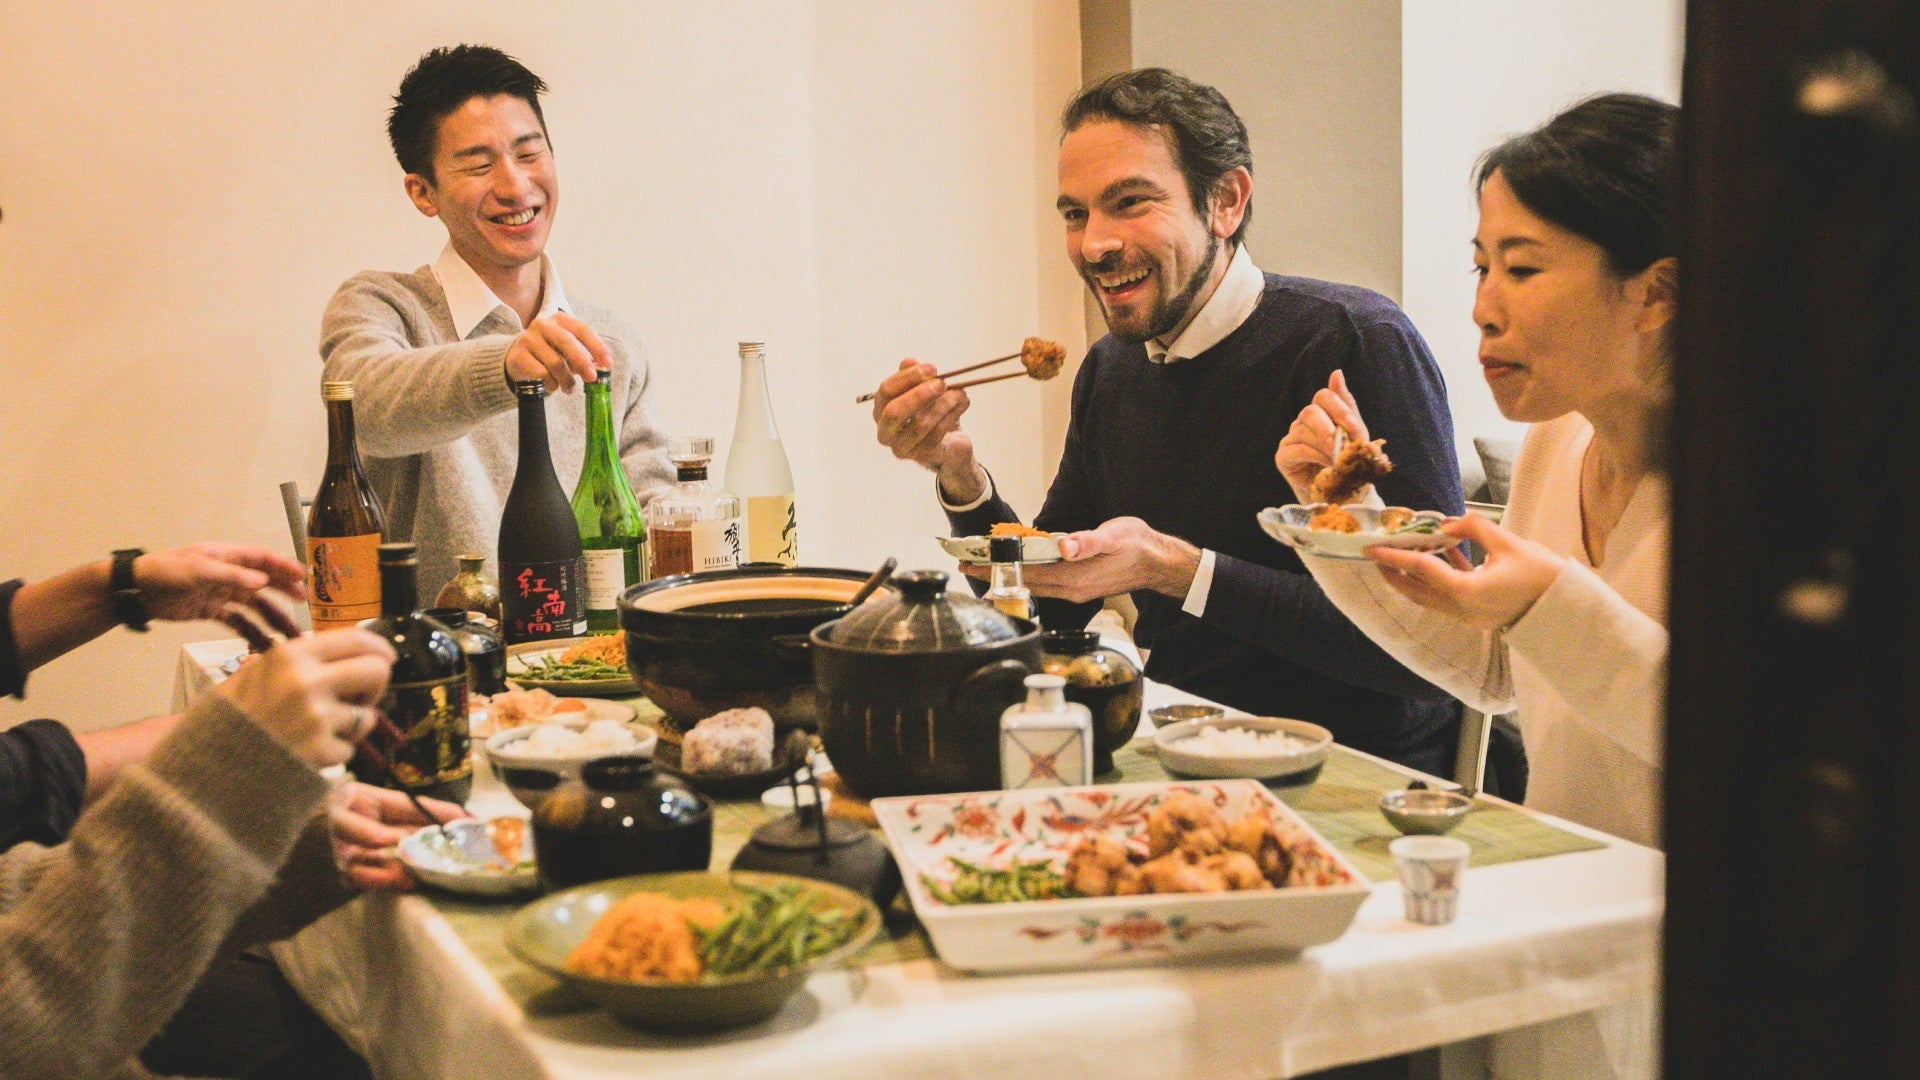 Minato, Megumi ed i loro amici mangiano a tavola con le bacchette. Come Usare Le Bacchette Secondo il Galateo Giapponese a Tavola